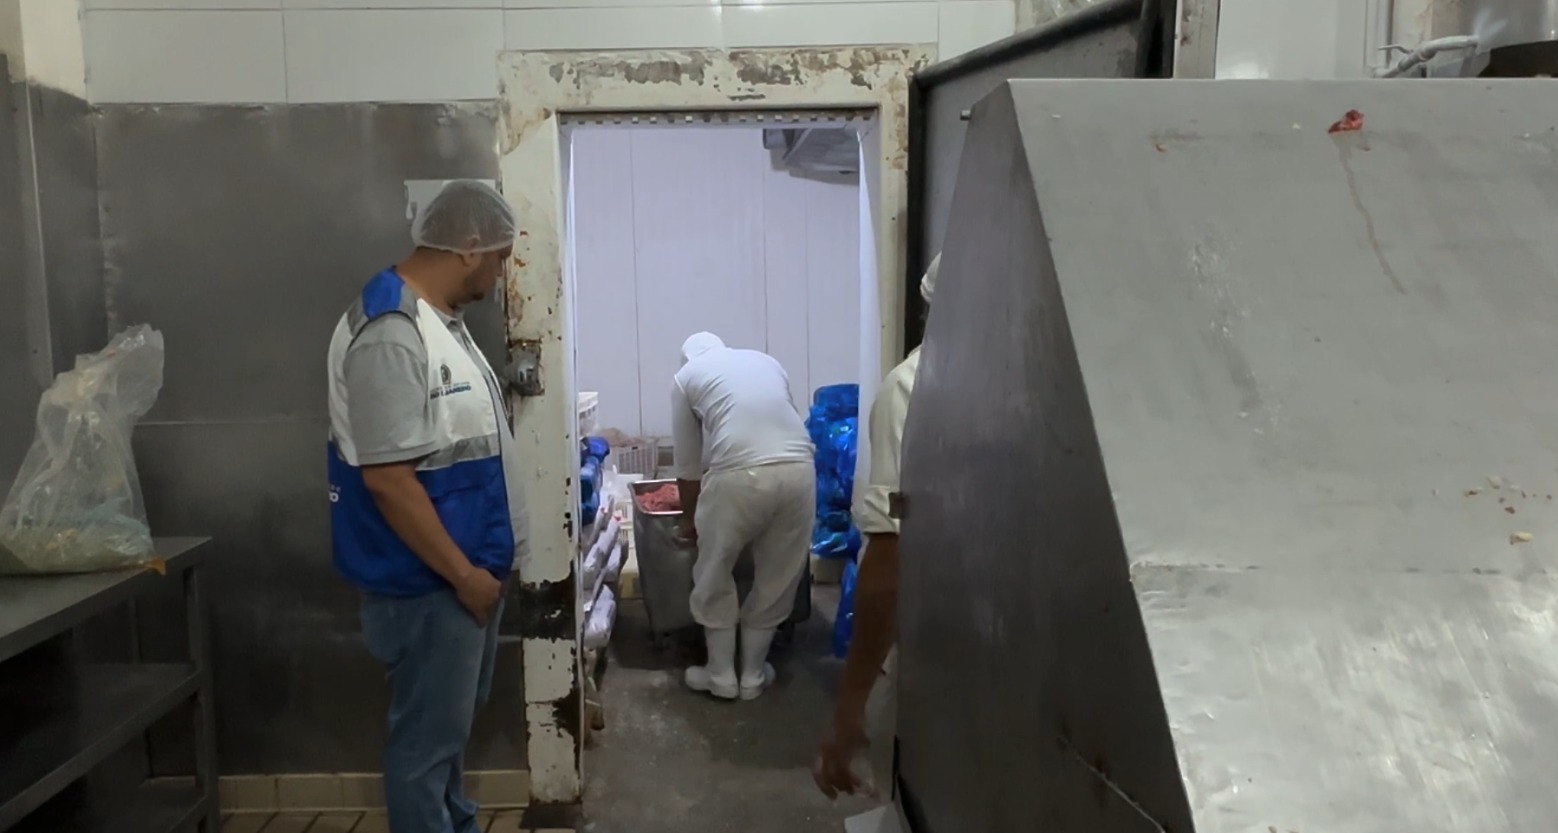 Procon RJ e Decon inutilizam cerca de duas toneladas e meia alimentos impróprios e interditam frigorífico da Zona Norte do Rio (Foto: Divulgação)